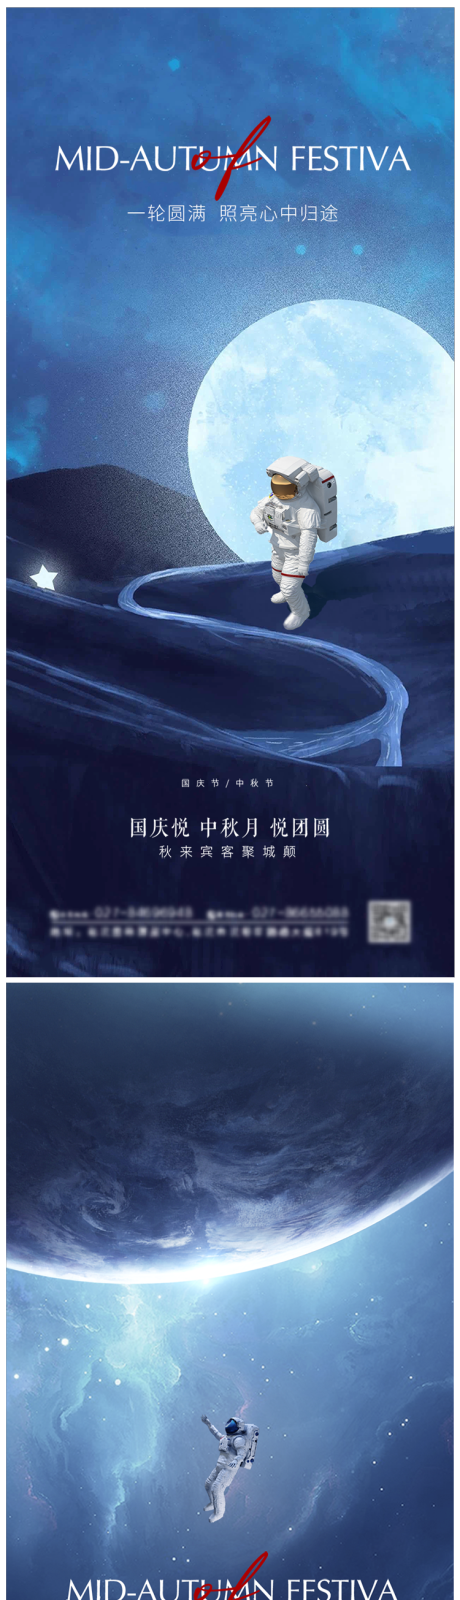 中秋节国庆节节日海报